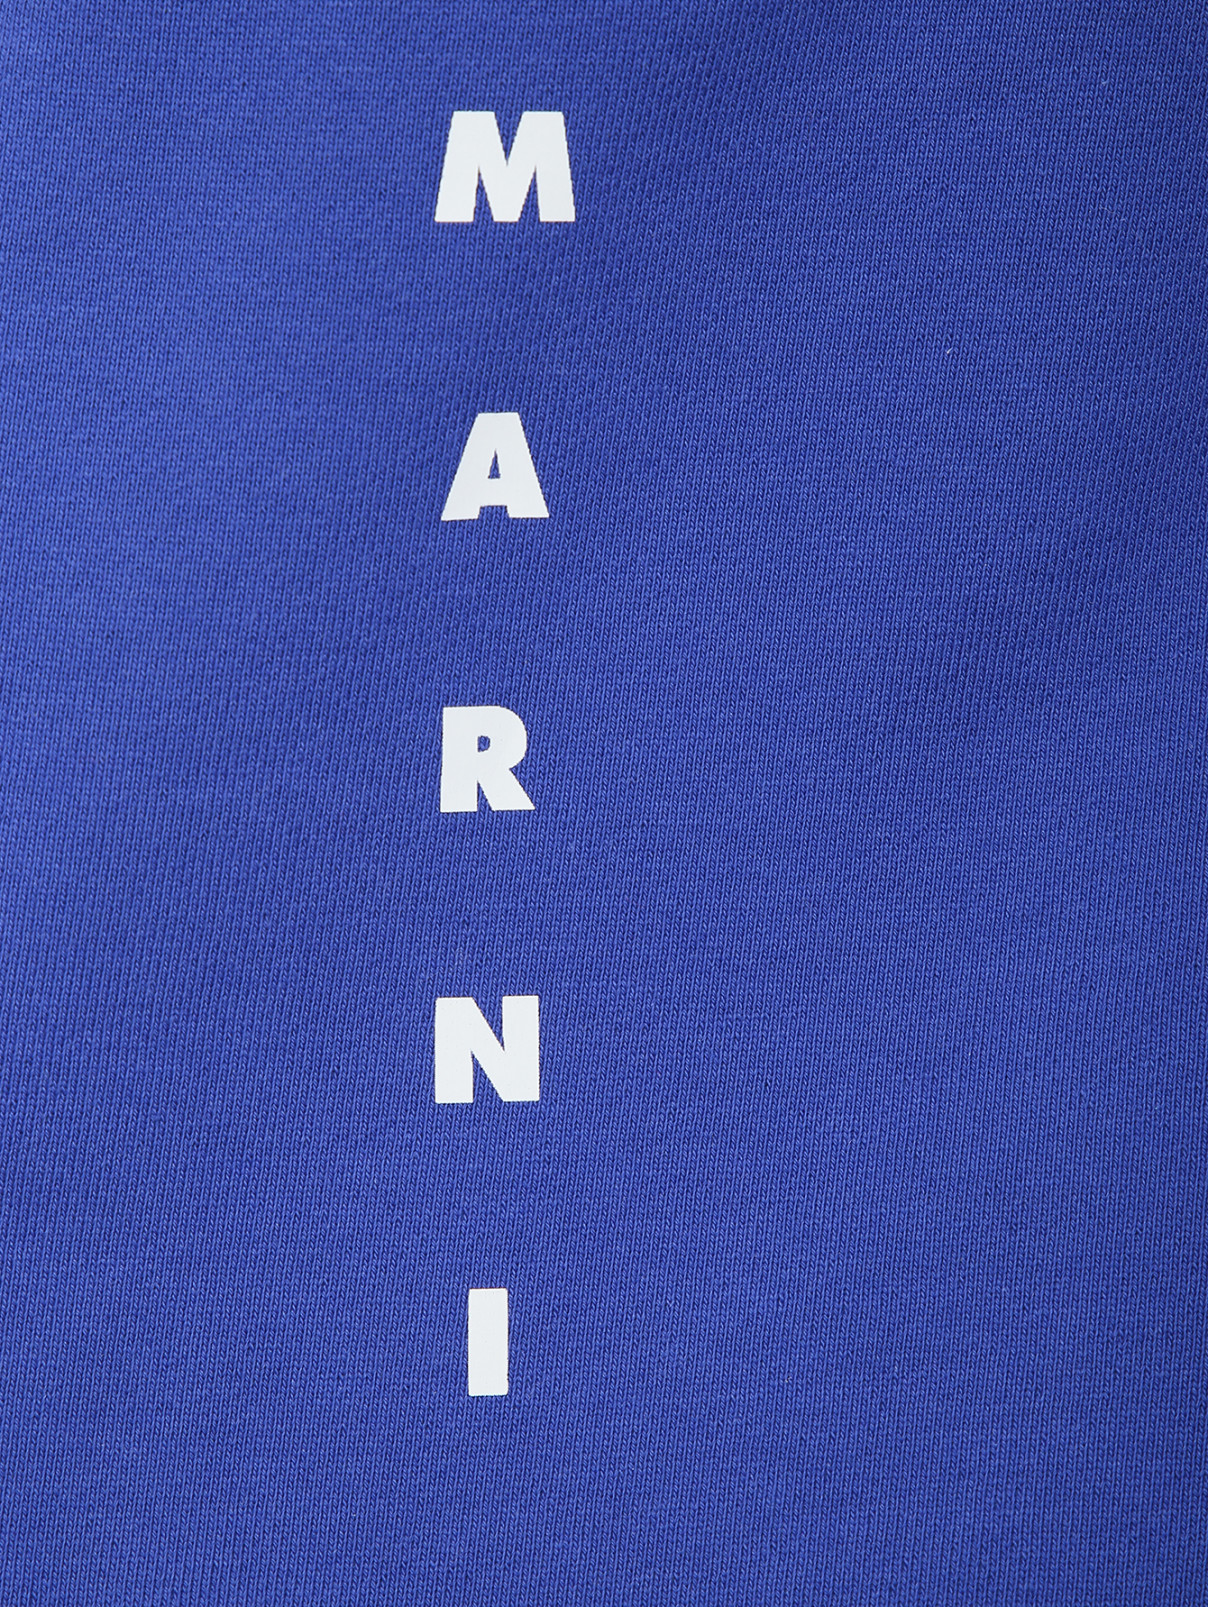 Хлопковая юбка с пайетками Marni  –  Деталь  – Цвет:  Синий